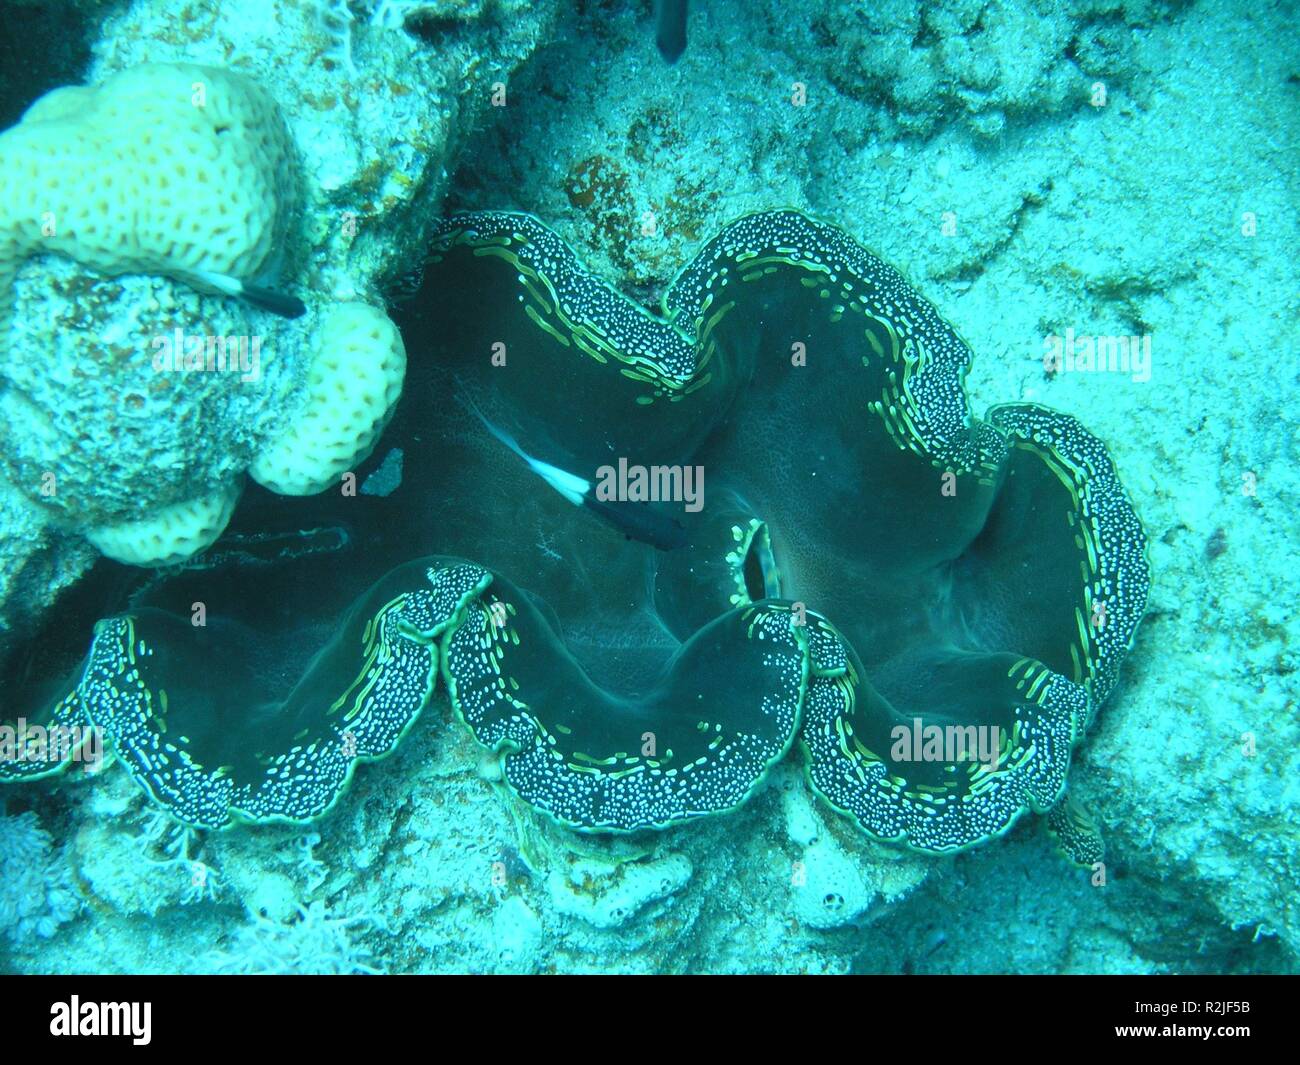 giant clam Stock Photo